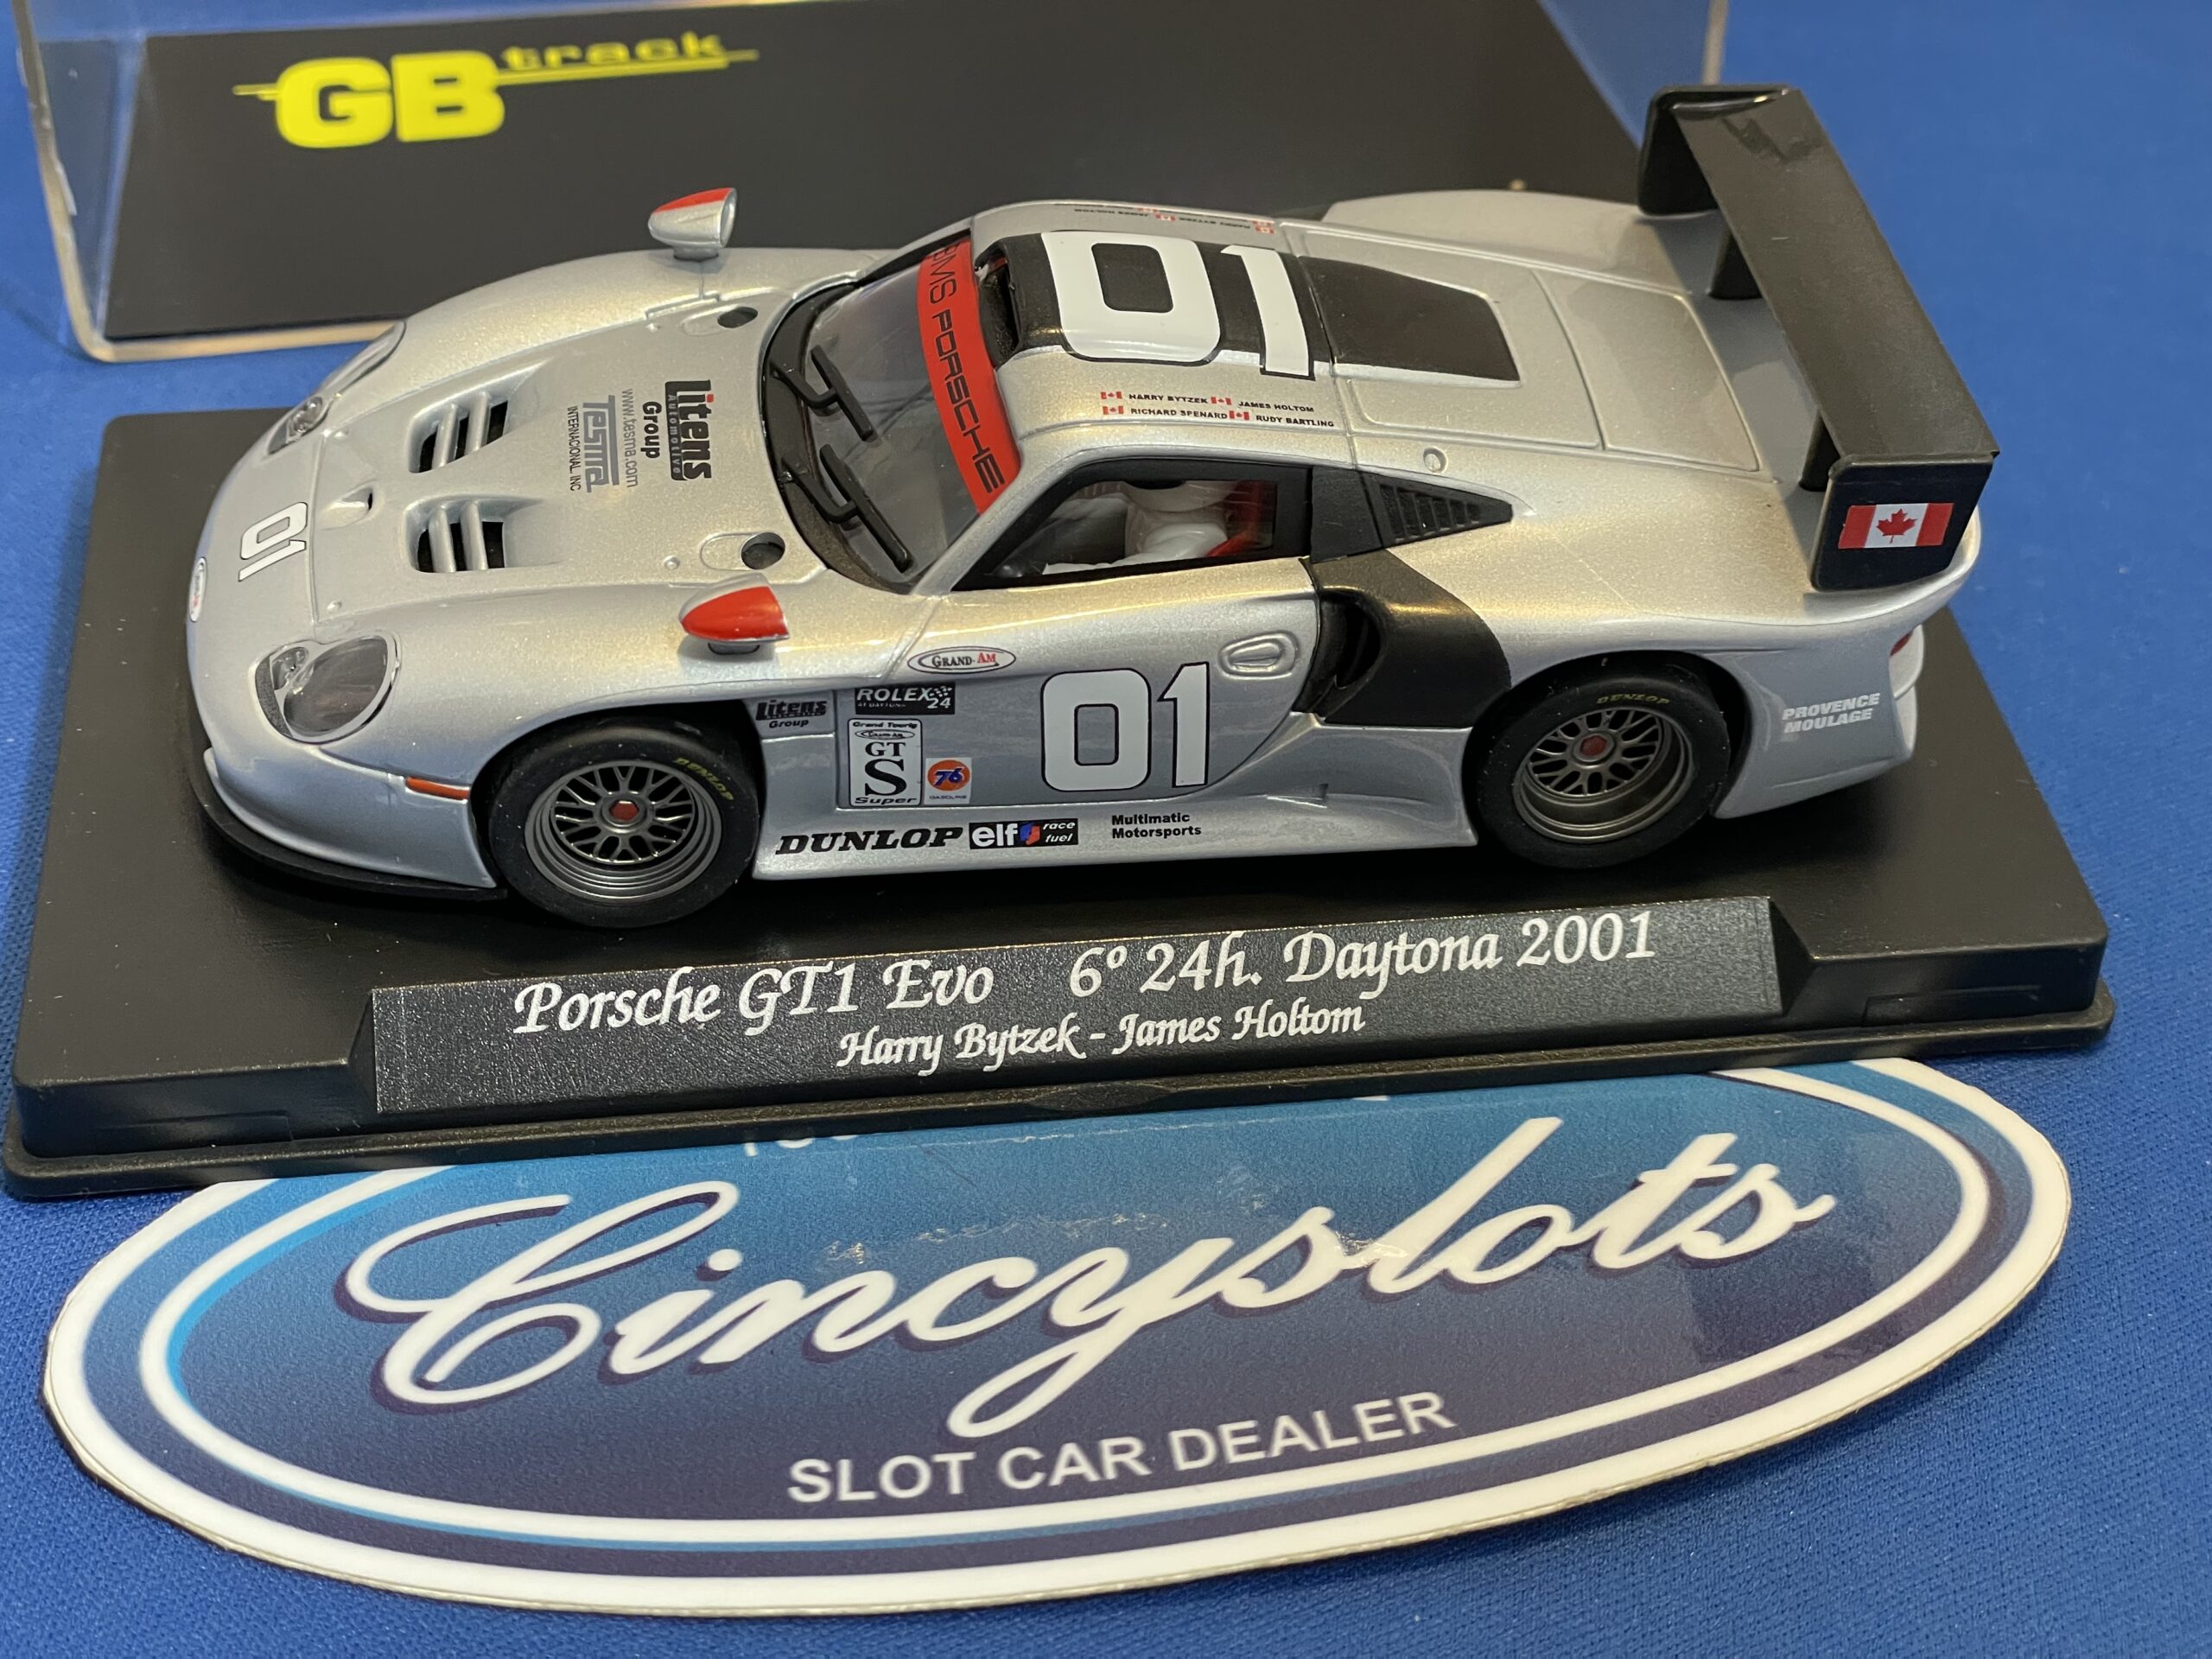 FLY GB73 Porsche 911 EVO, 1/32 Slot Car.